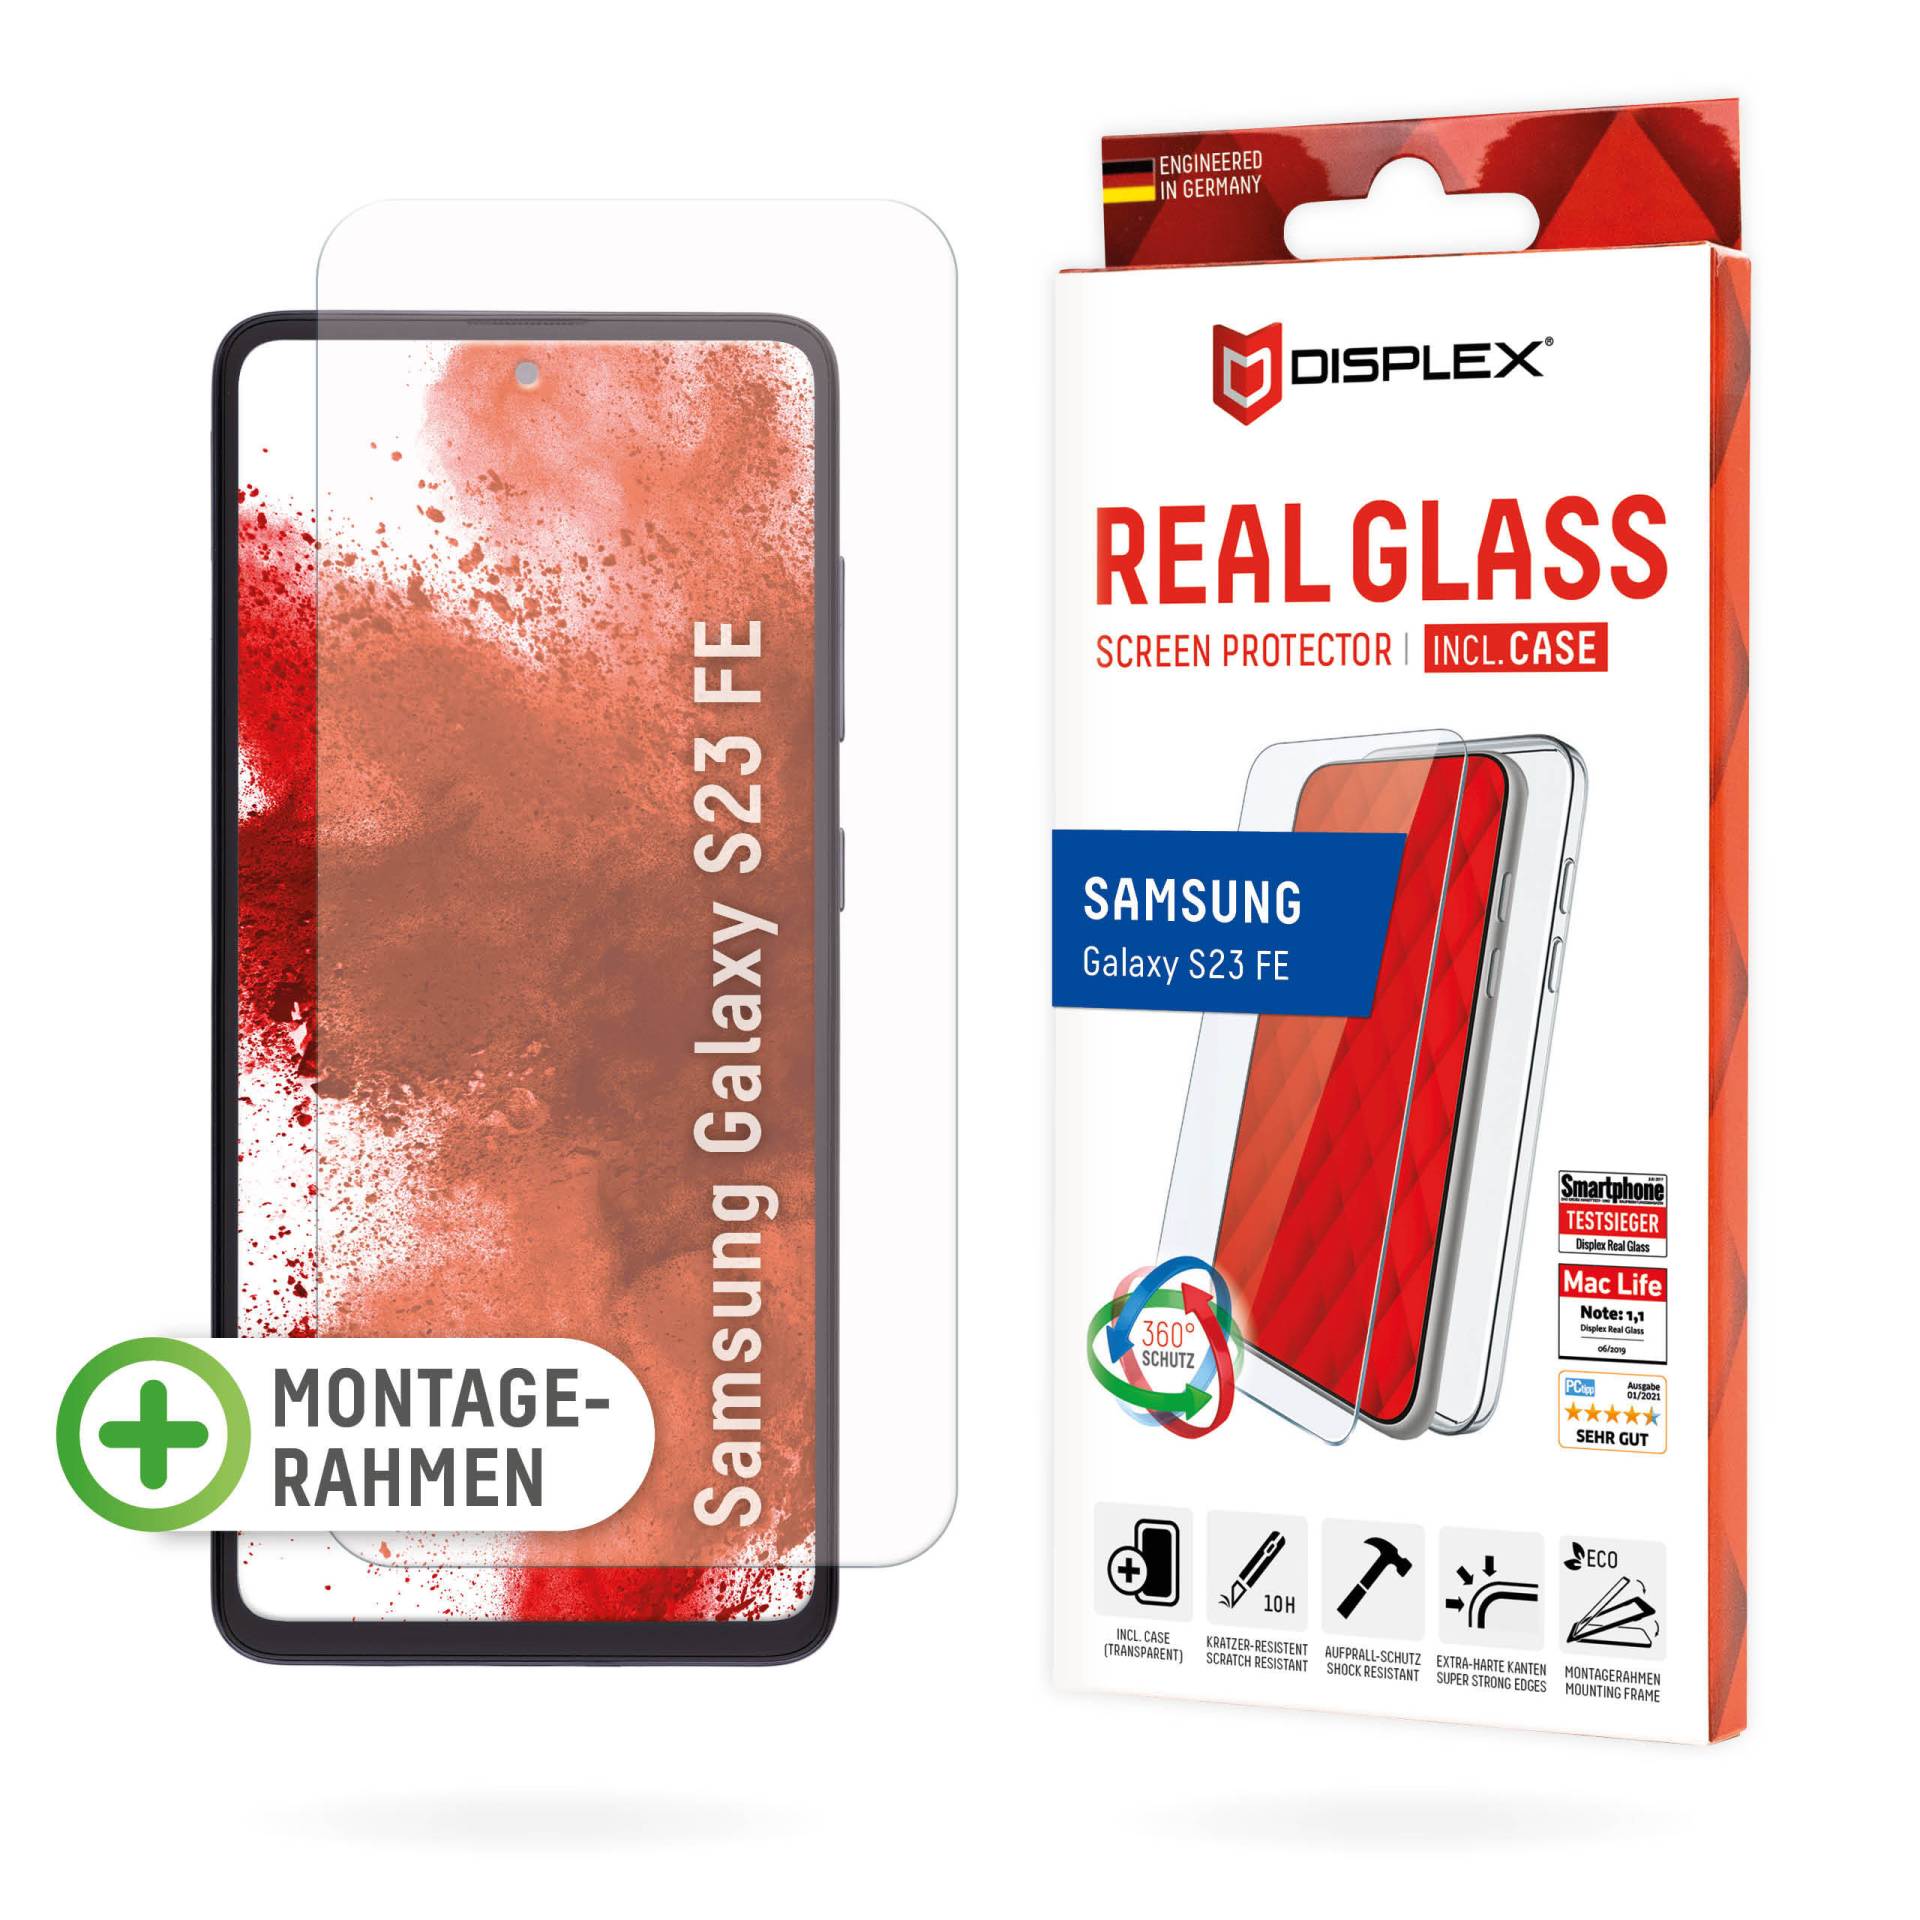 DISPLEX Panzerglas (10H) + Schutzhülle für Samsung Galaxy S23 FE Eco-Montagerahmen, + Case, Tempered Glas, kratzer-resistente Schutzfolie von Displex